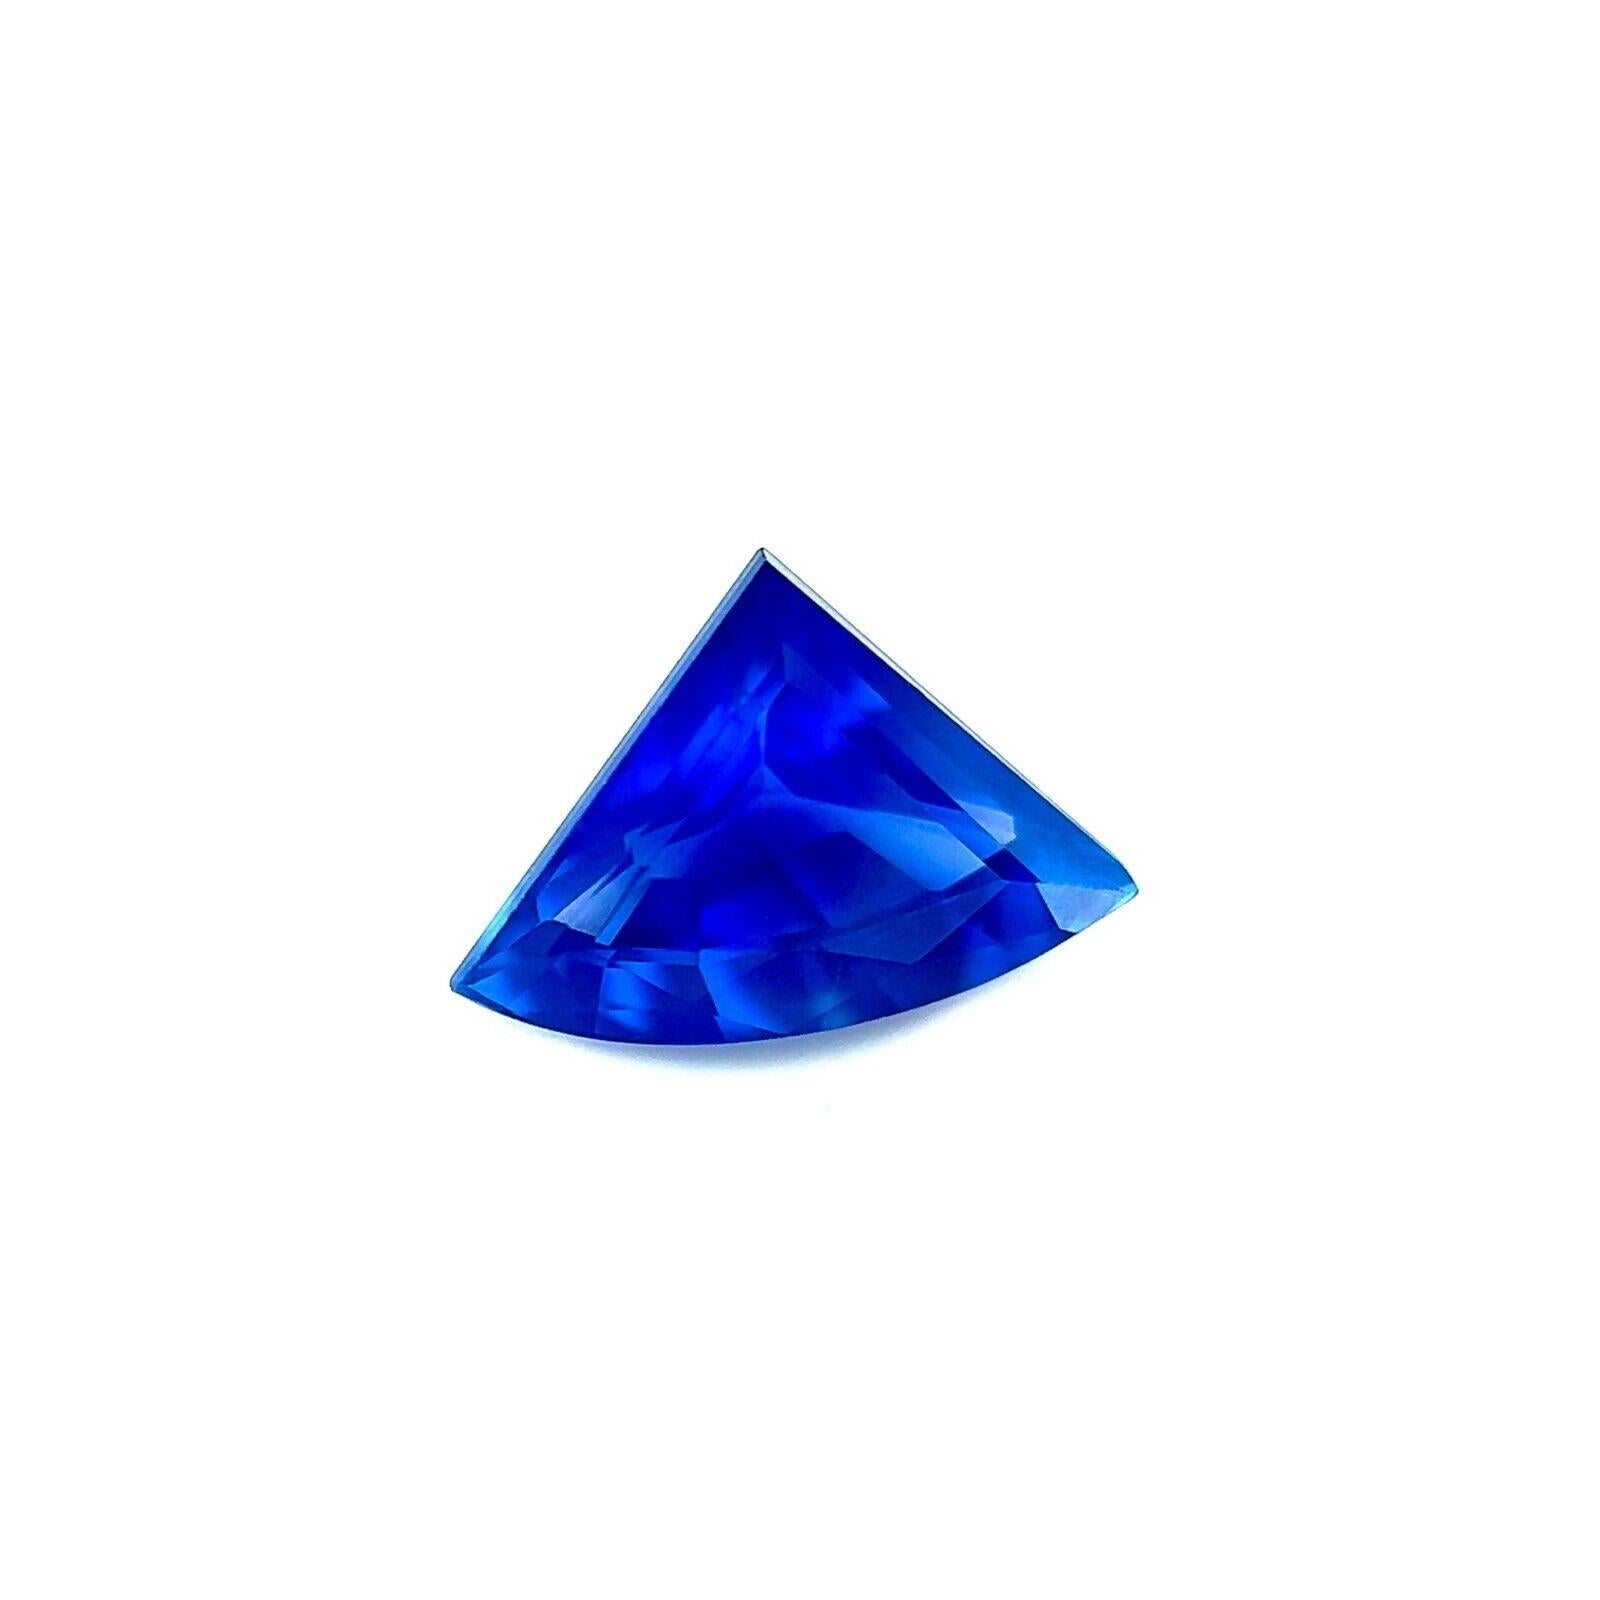 1.08Ct Ceylon Sapphire Cornflower Blue Loose Fancy Fan Cut Natural VS

Pierre précieuse en saphir de Ceylan de taille fantaisie, de couleur bleu bleu corail.
1,08 carat d'une belle couleur bleu bleuet et d'une excellente taille fantaisie.
La pierre